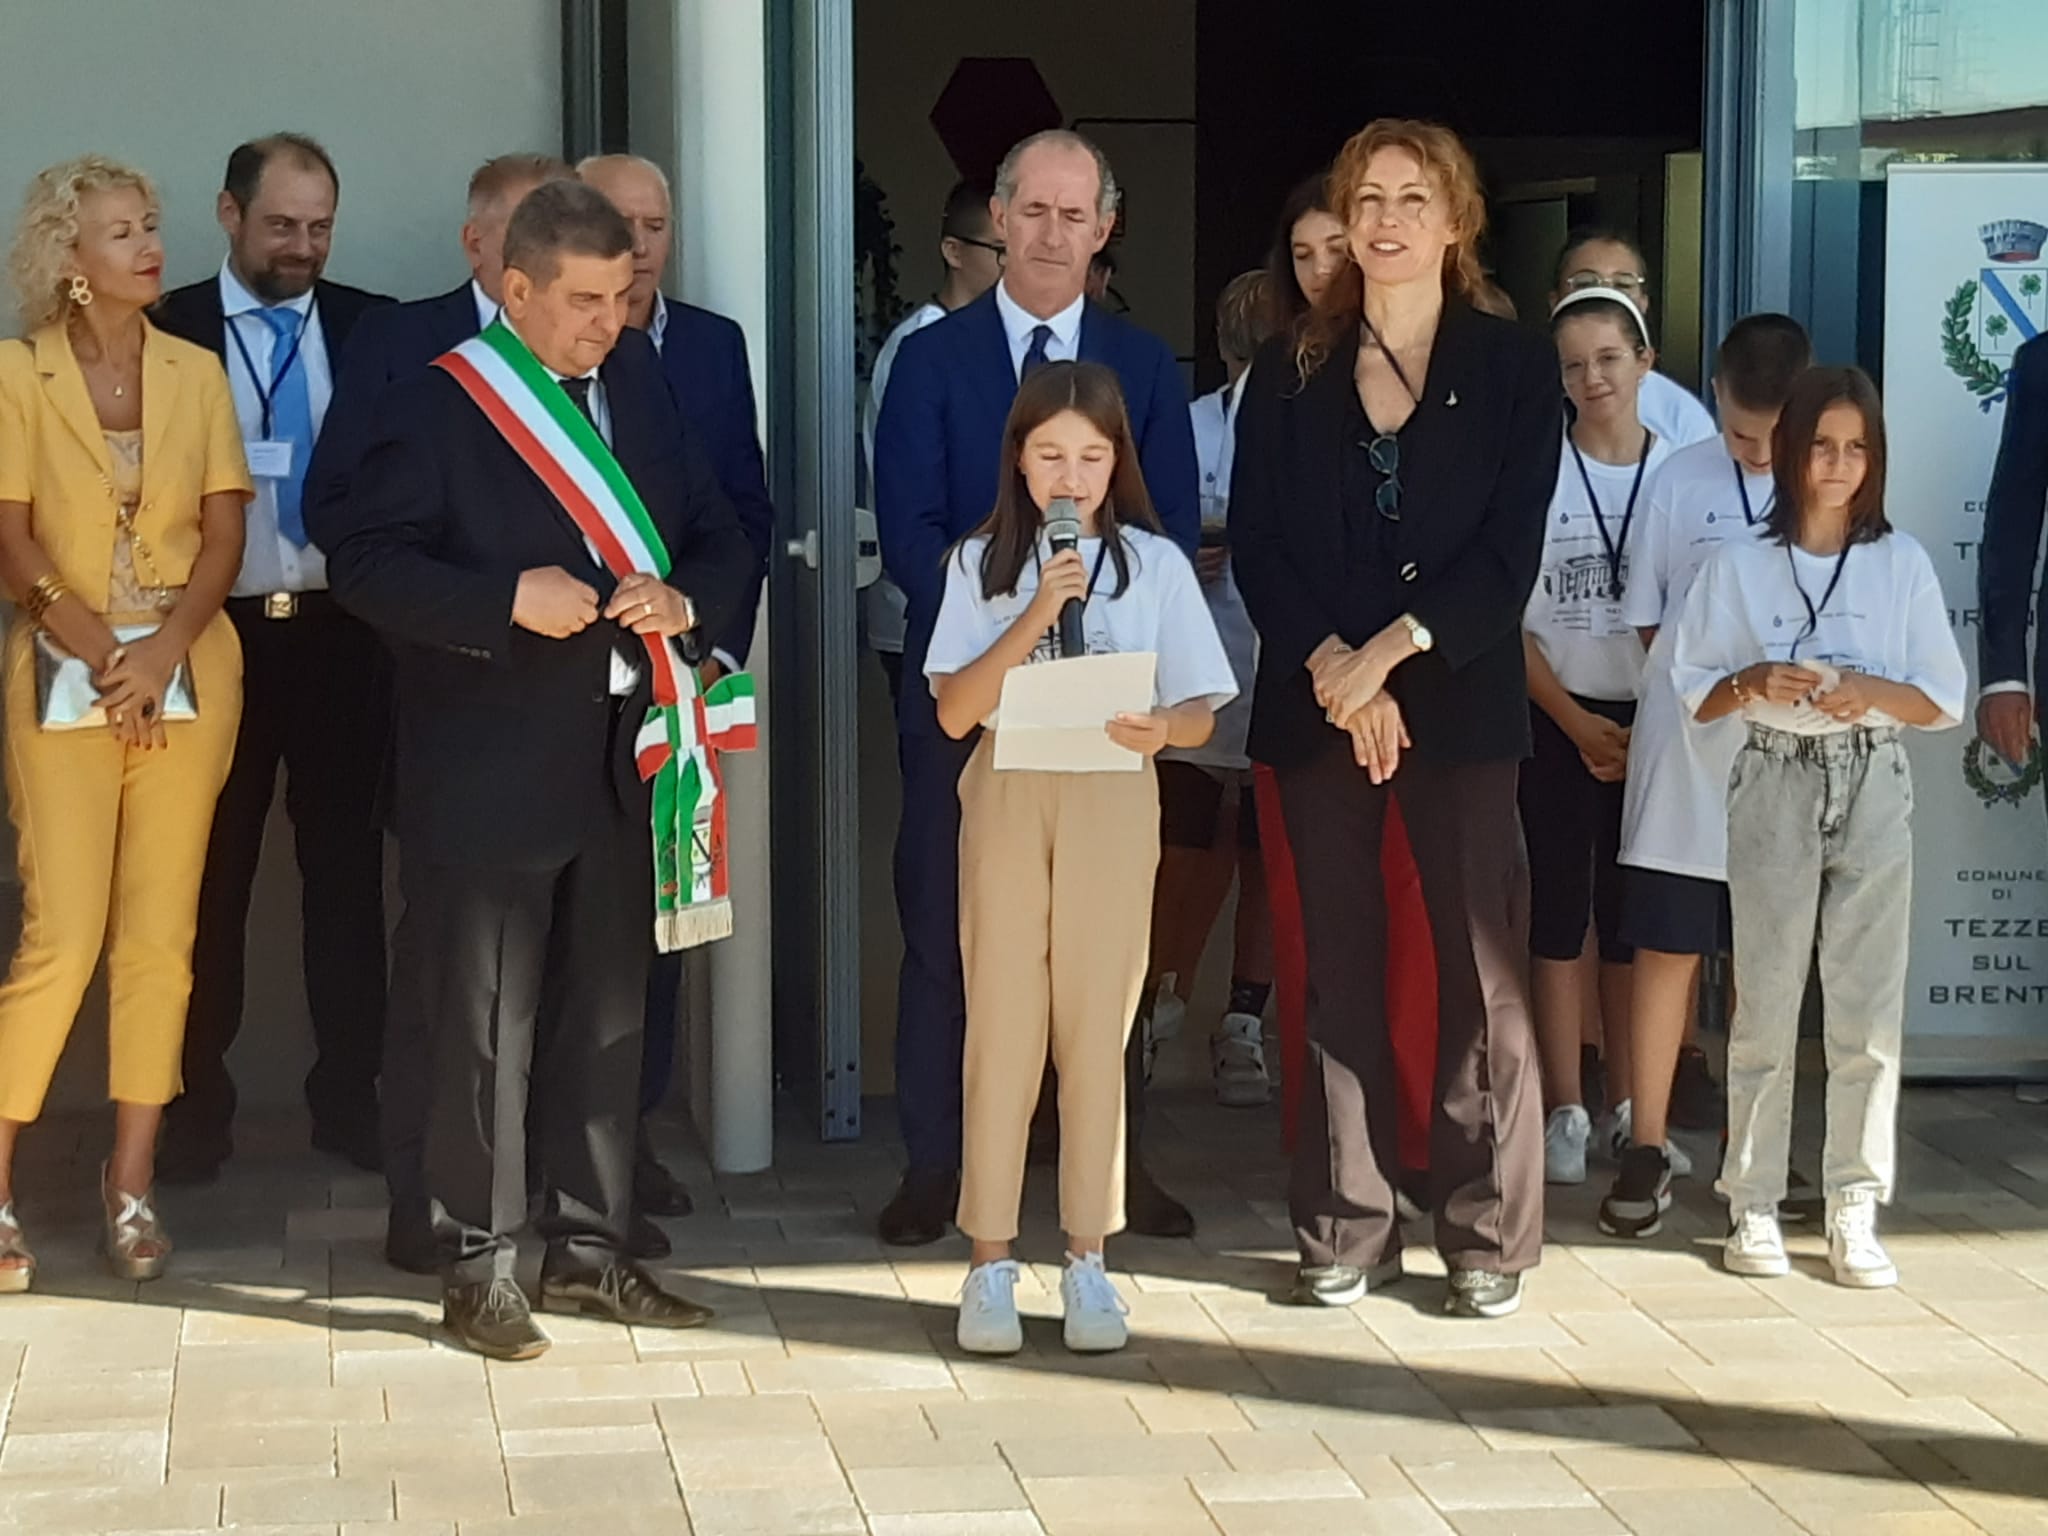 Luca Zaia inaugura primo stralcio scuola a Tezze sul Brenta (VI)